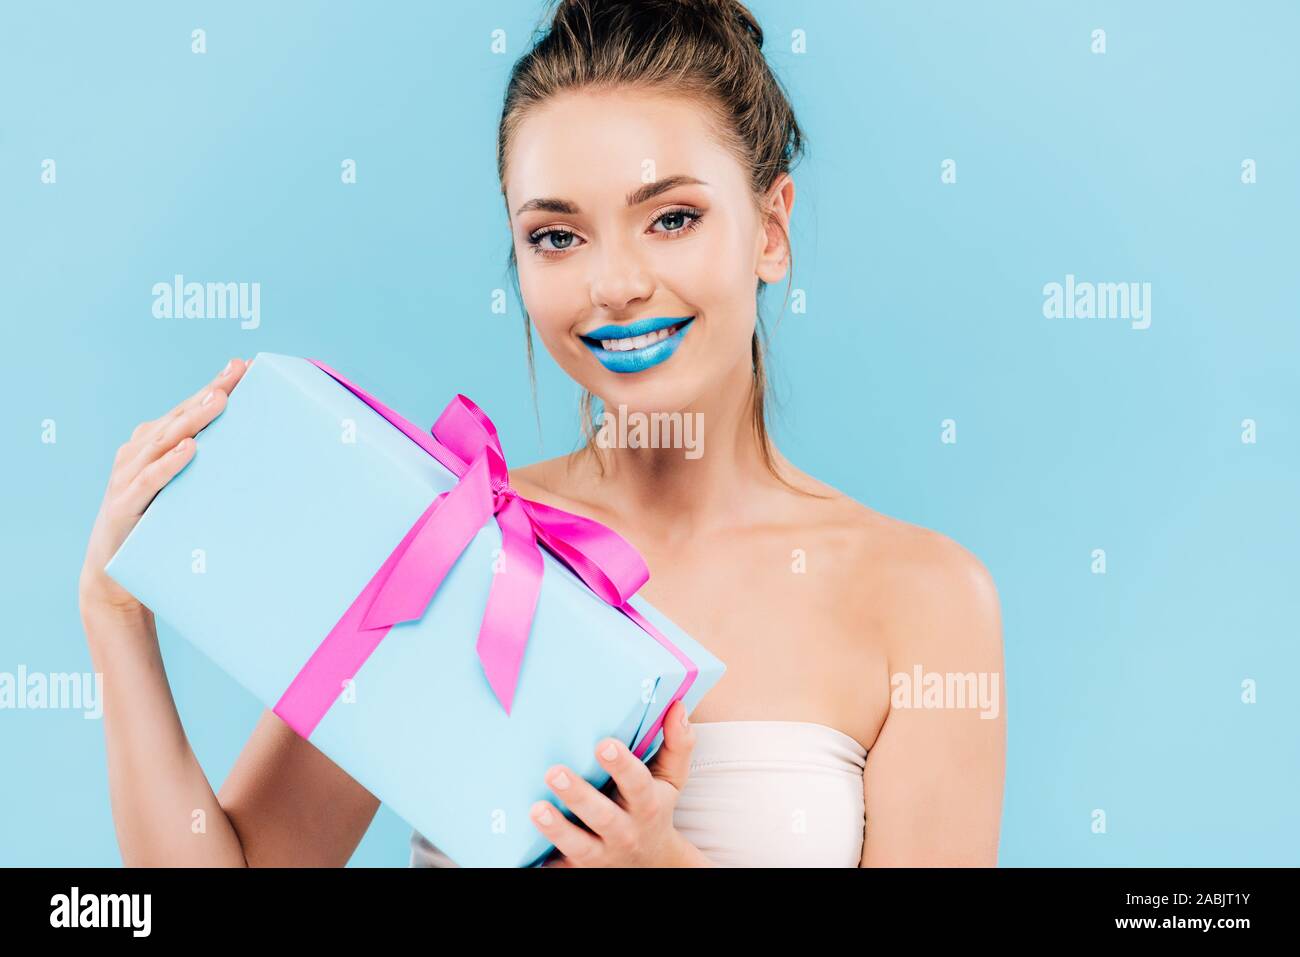 Heureux belle femme avec les lèvres bleues holding gift isolé sur blue Banque D'Images